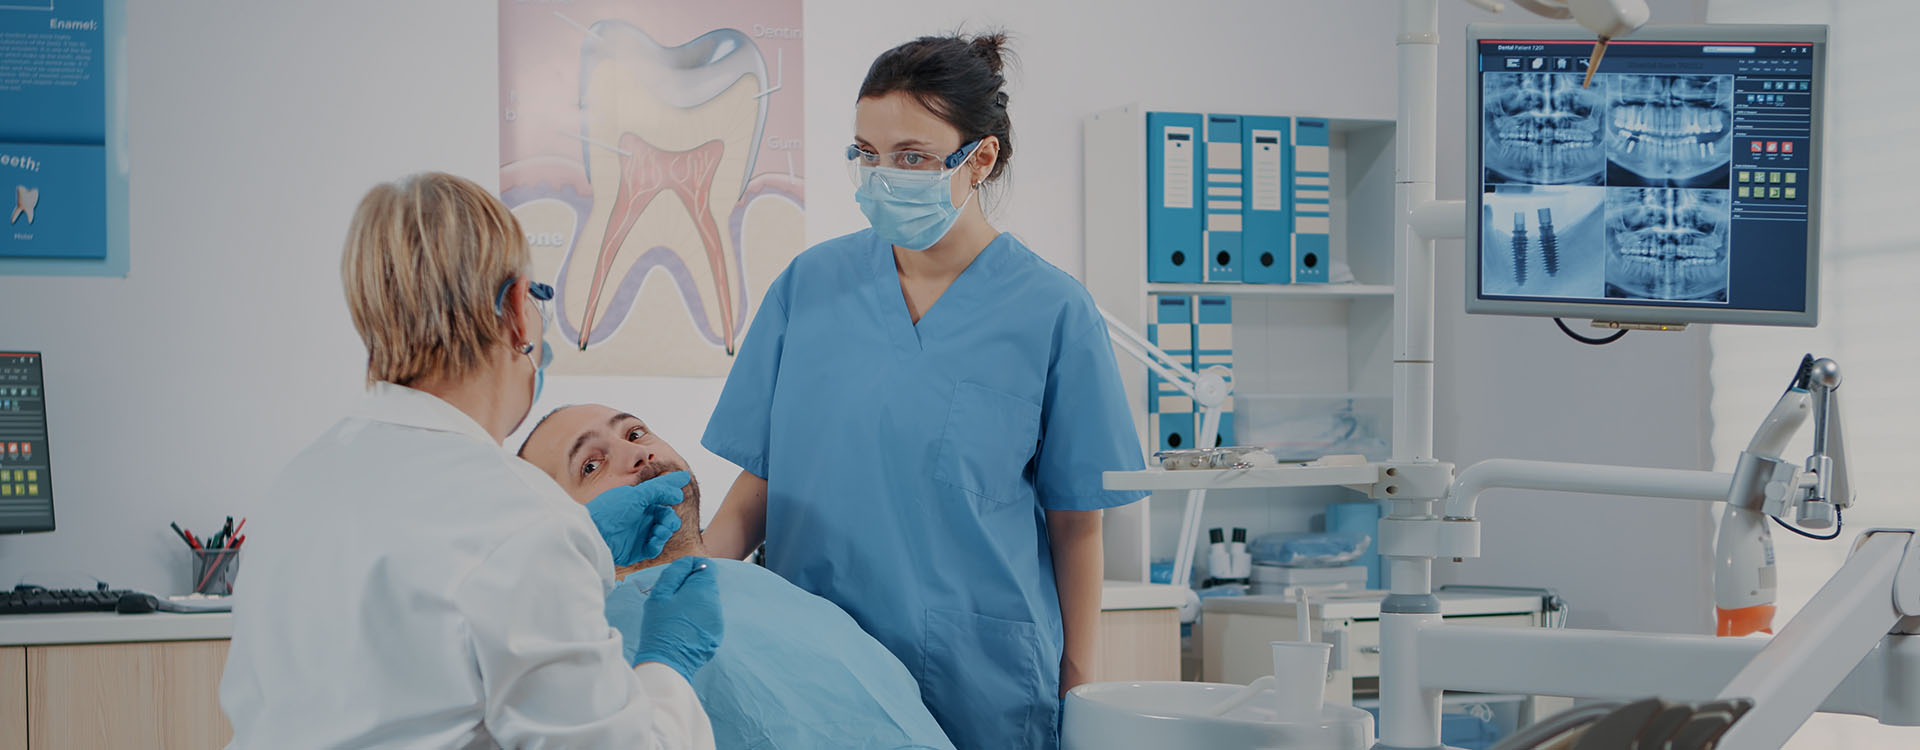 Clínica Dental Andrea Compte, tu Centro Odontológico especializado. Cirugía bucal en Peñíscola. Dentistas examinando al paciente en la consulta.